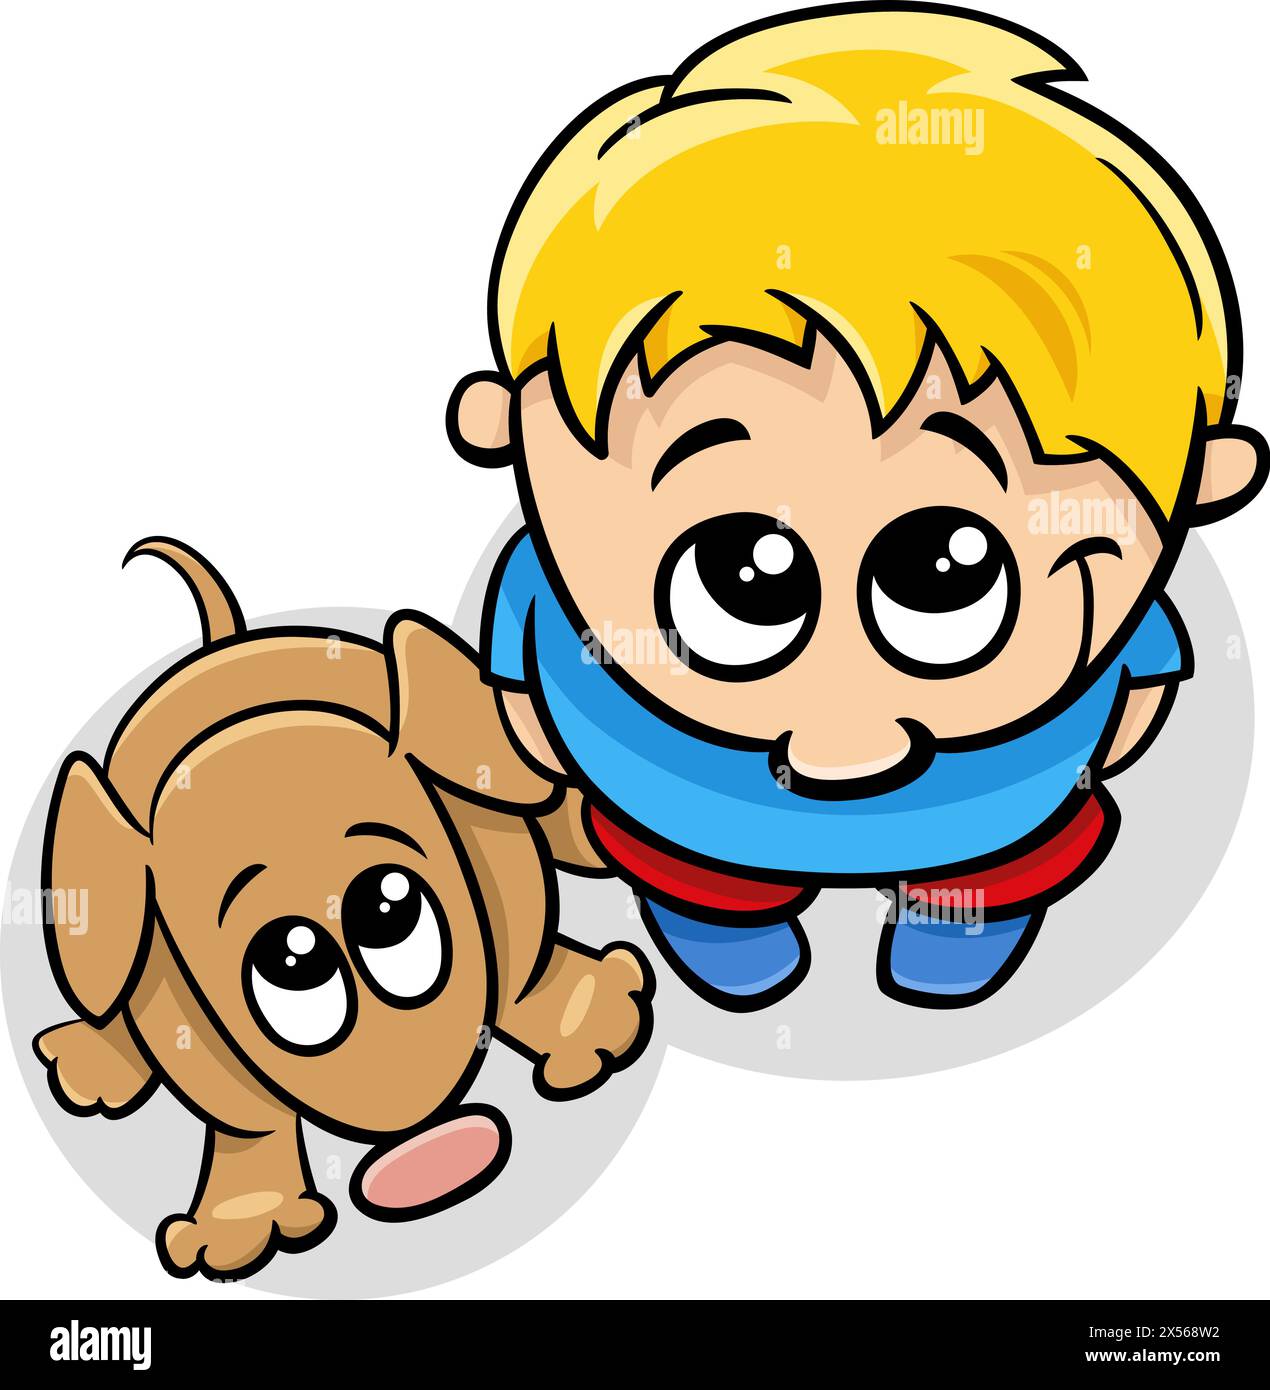 Illustration de dessin animé de petit garçon personnage avec son chien de compagnie Illustration de Vecteur